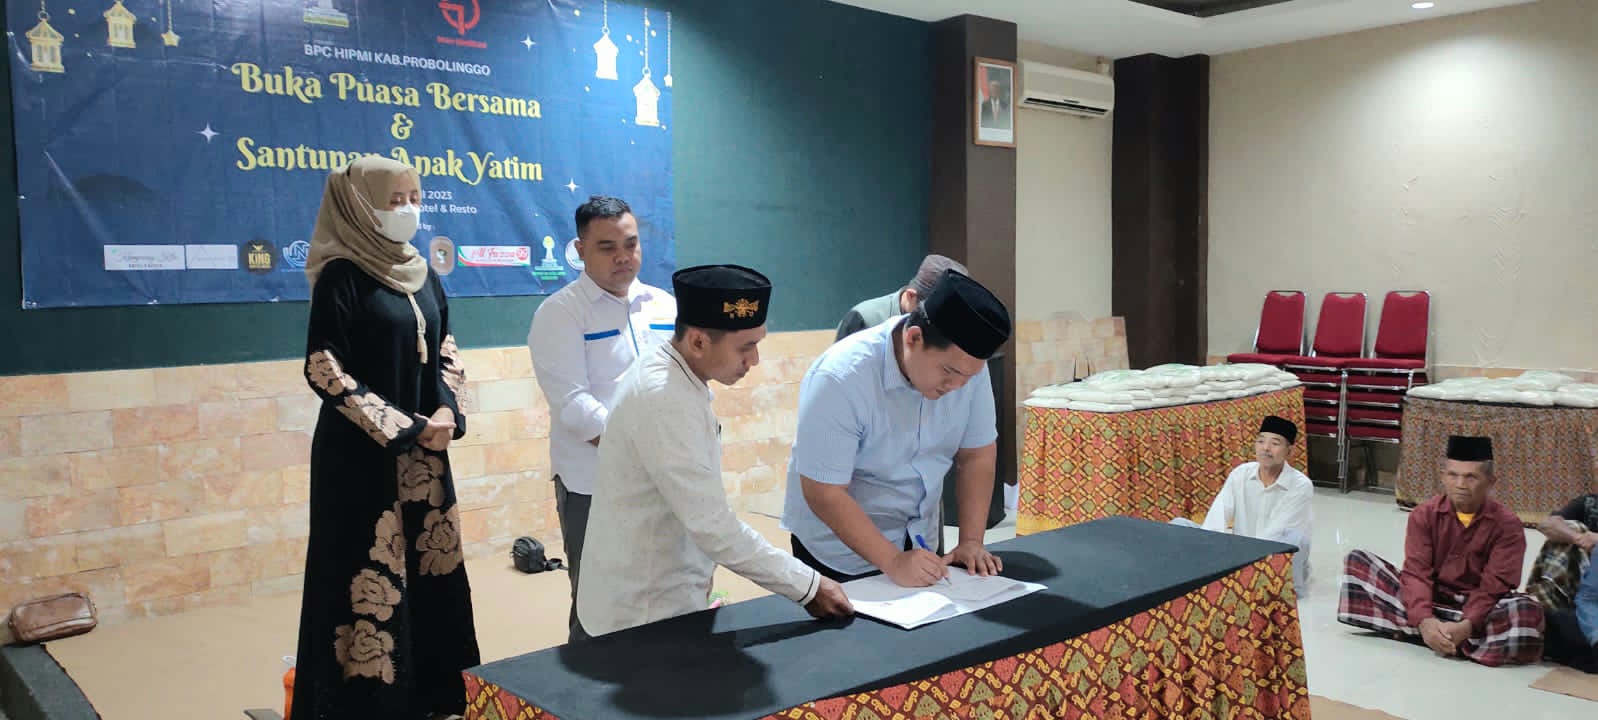 penandatanganan kerjasama antara Yayasan Hafshawaty dengan Himpunan Pengusaha Muda Indonesia (HIPMI)